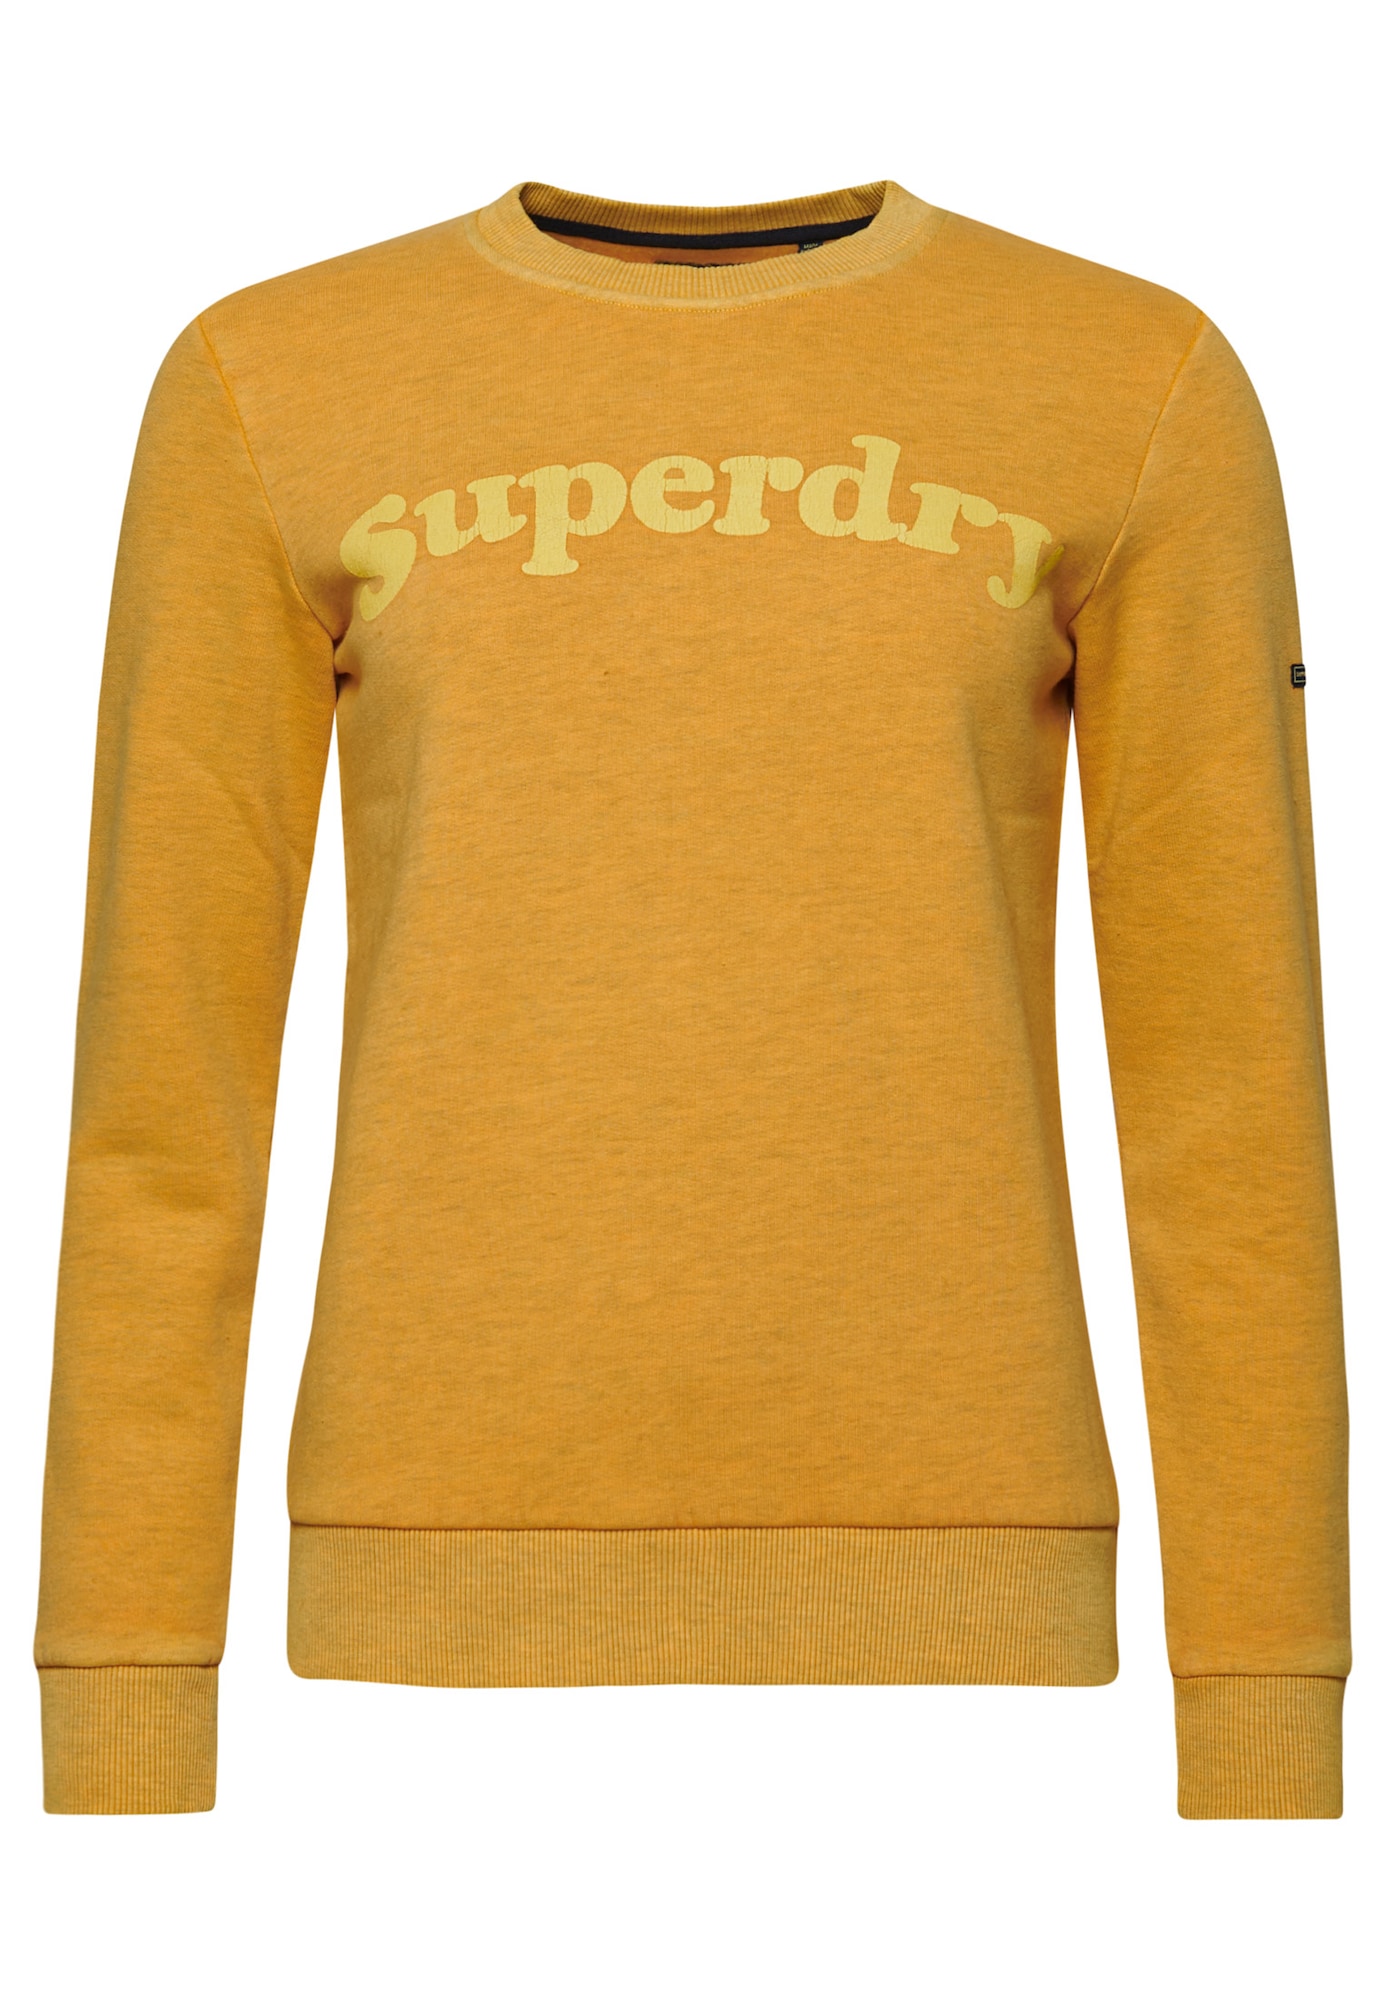 Superdry Sweatshirt gelb